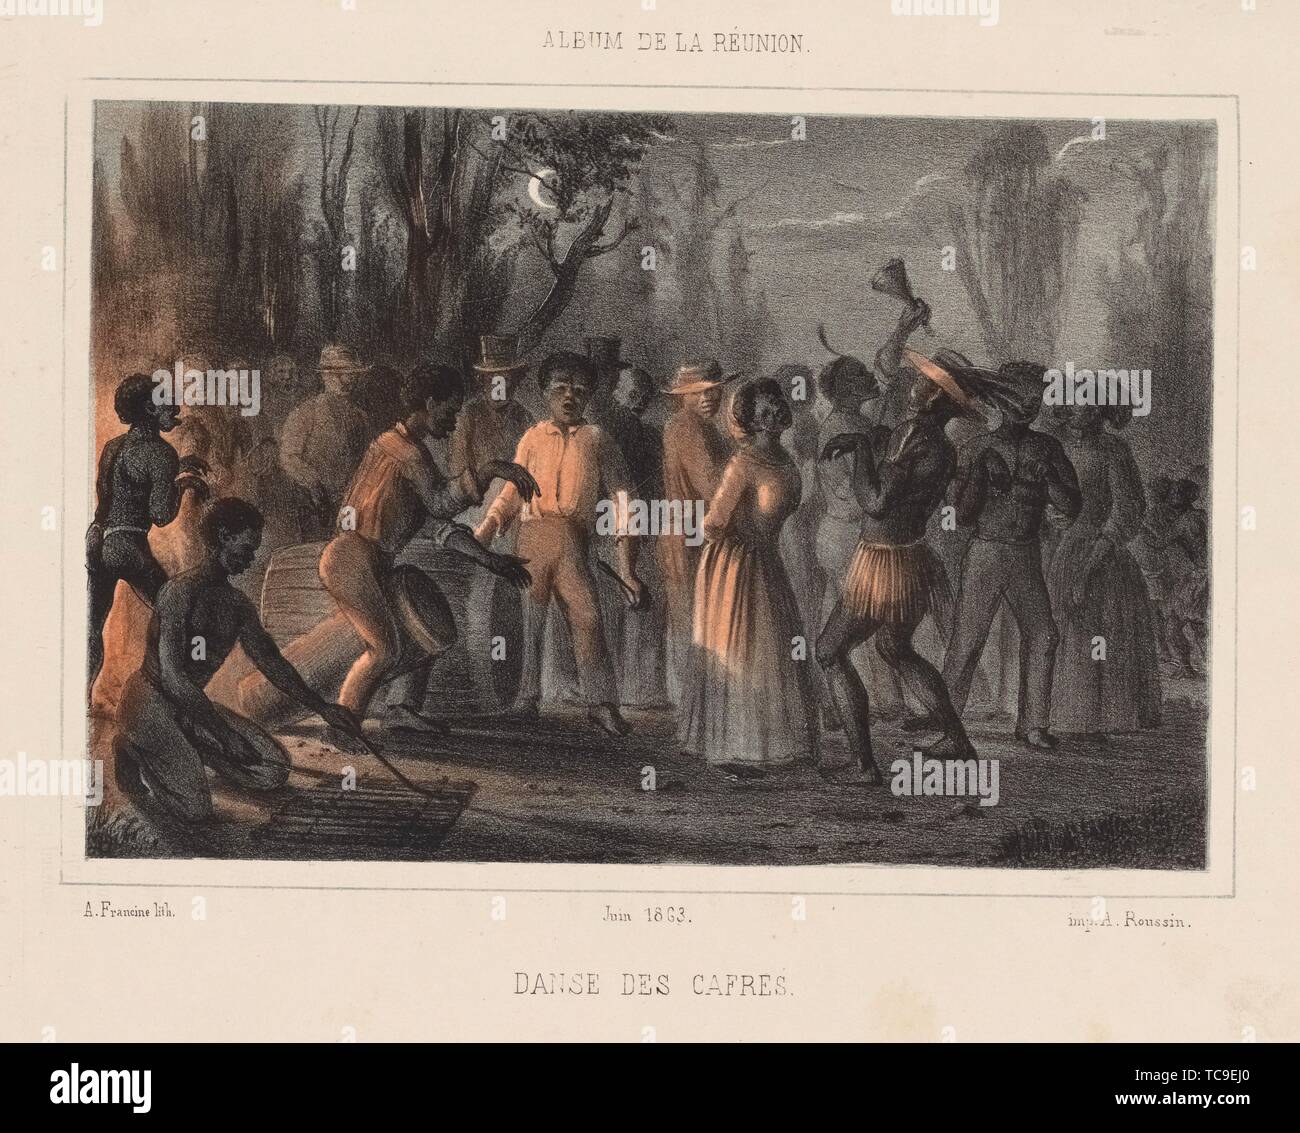 Danse-des-Cafres. Roussin, Antoine, 1819-1894 (Künstler) Francine, A. (lithograph). Drucke von Tanz Themen. Datum der Ausgabe: 1863-06. Tanz, Stockfoto